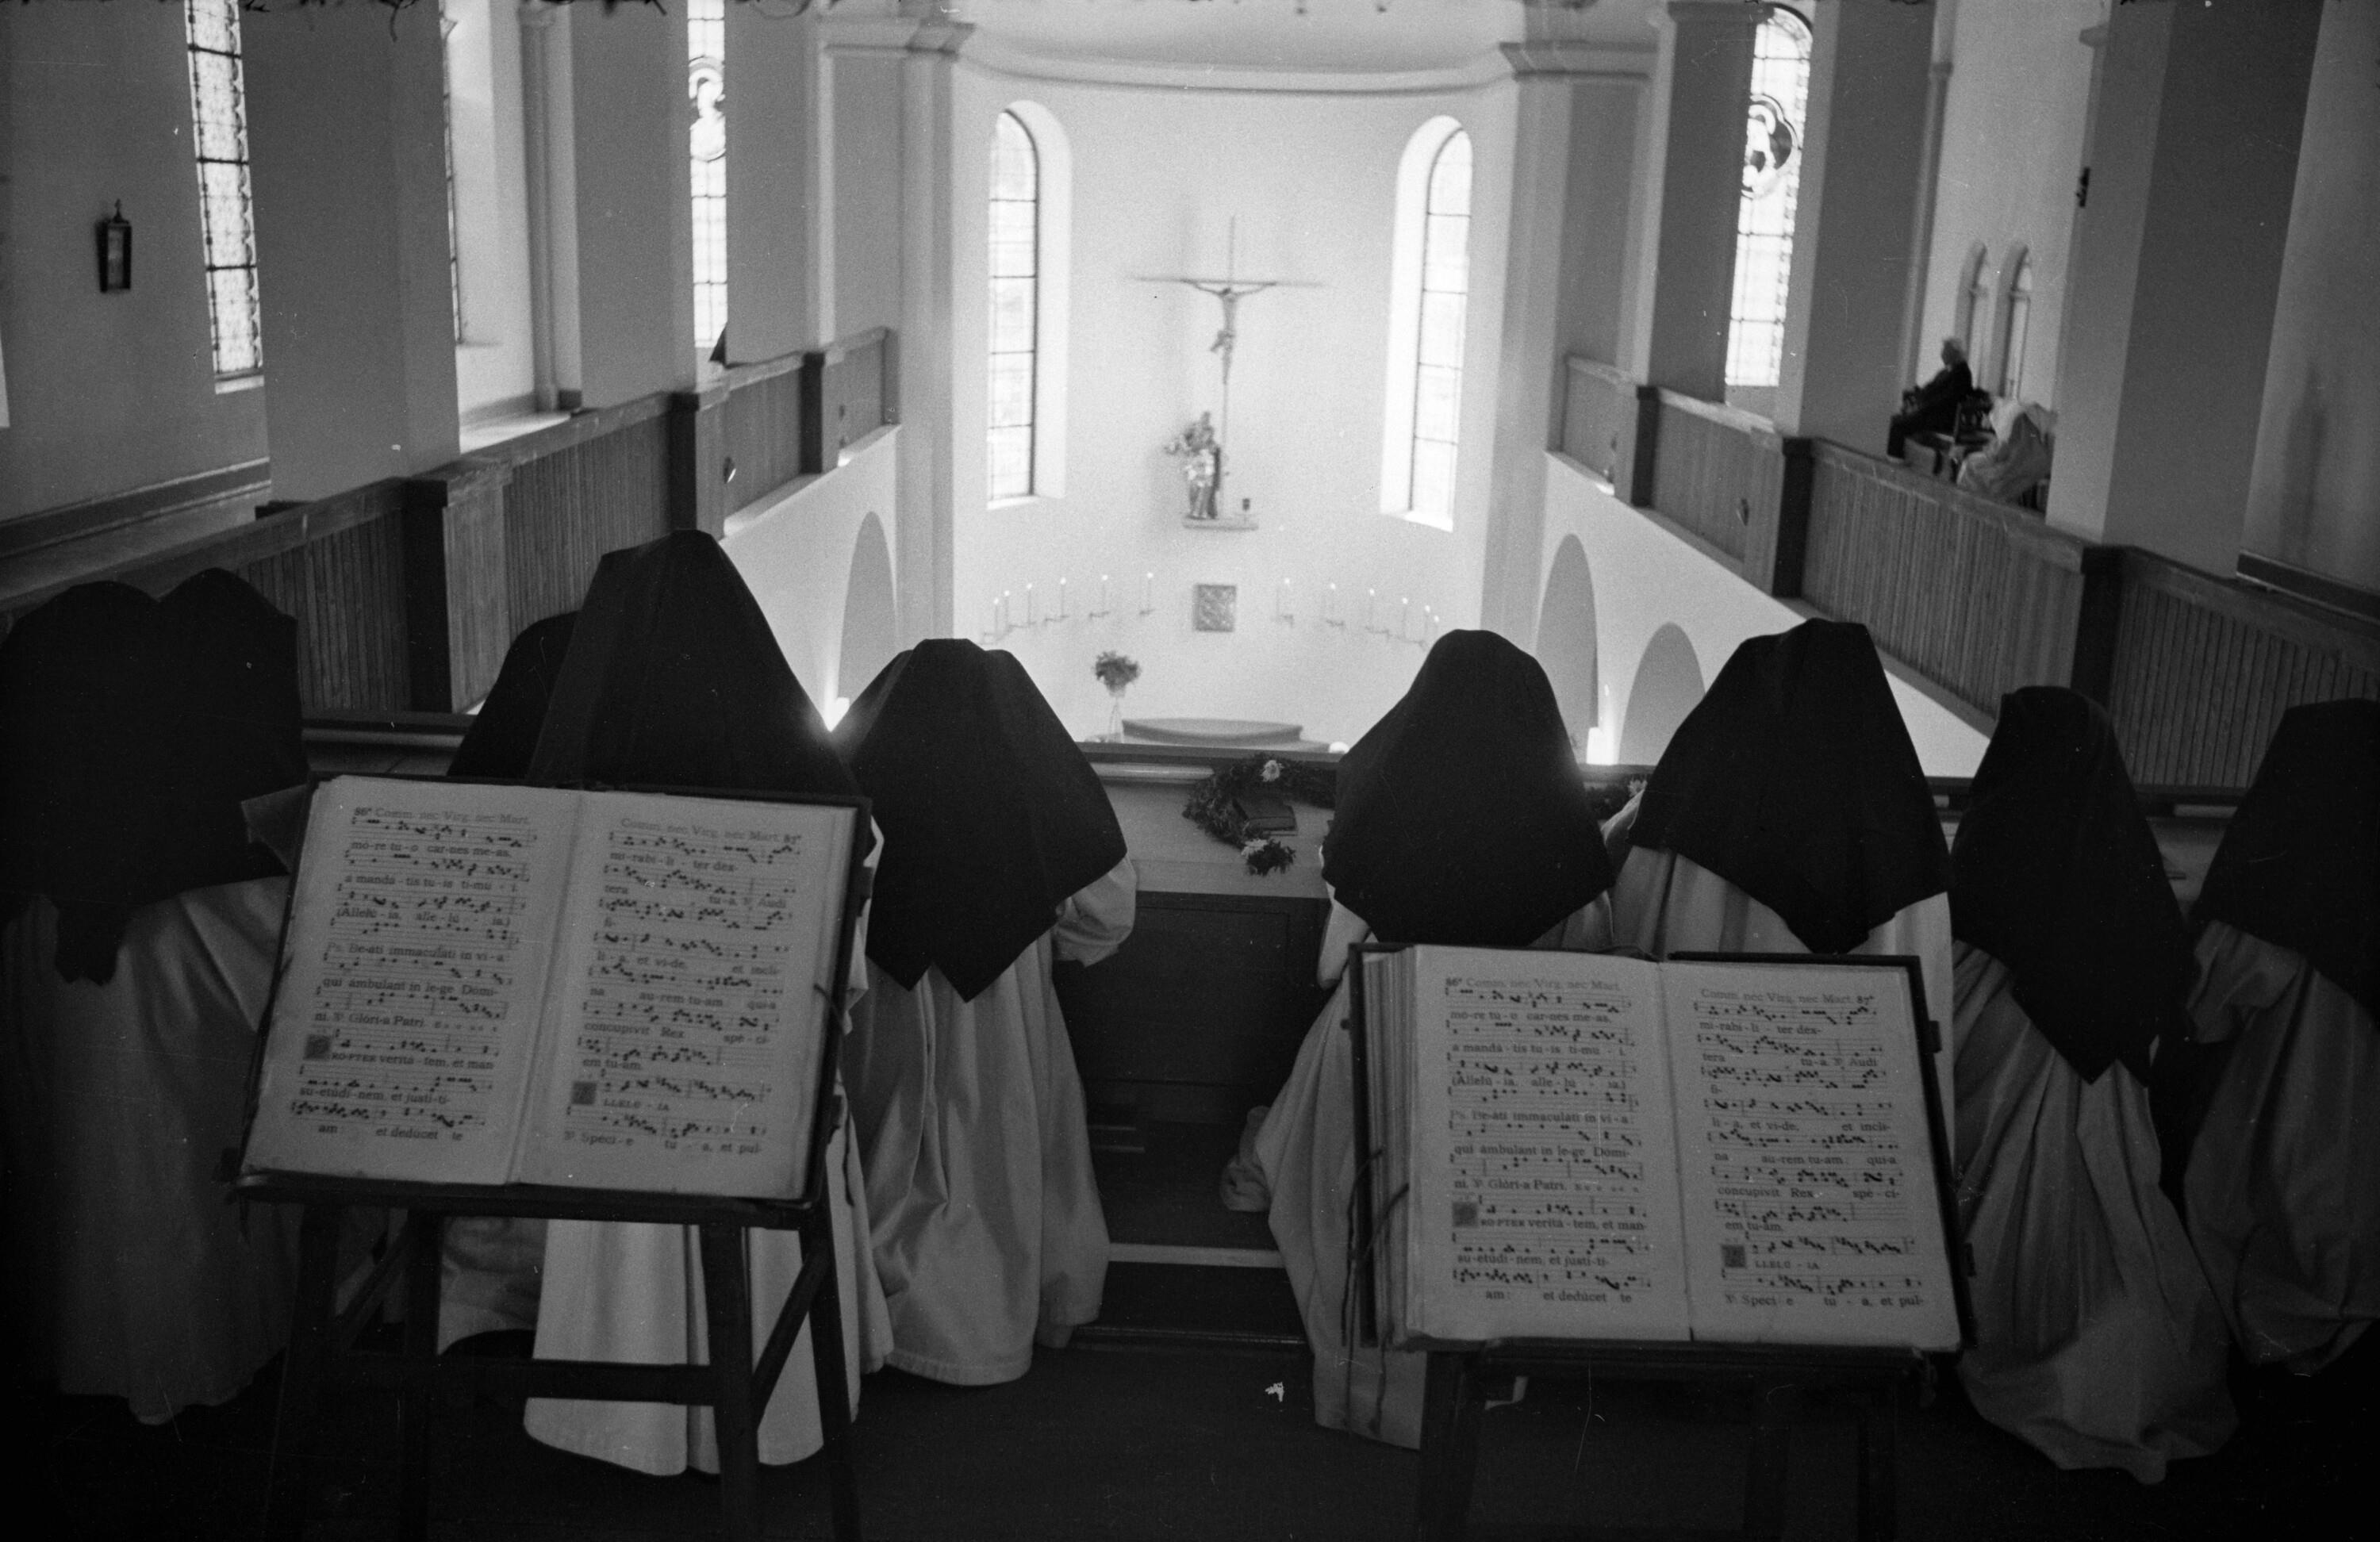 Altarsegnung in der Klosterkirche Mariastern in Hohenweiler - Gwiggen></div>


    <hr>
    <div class=